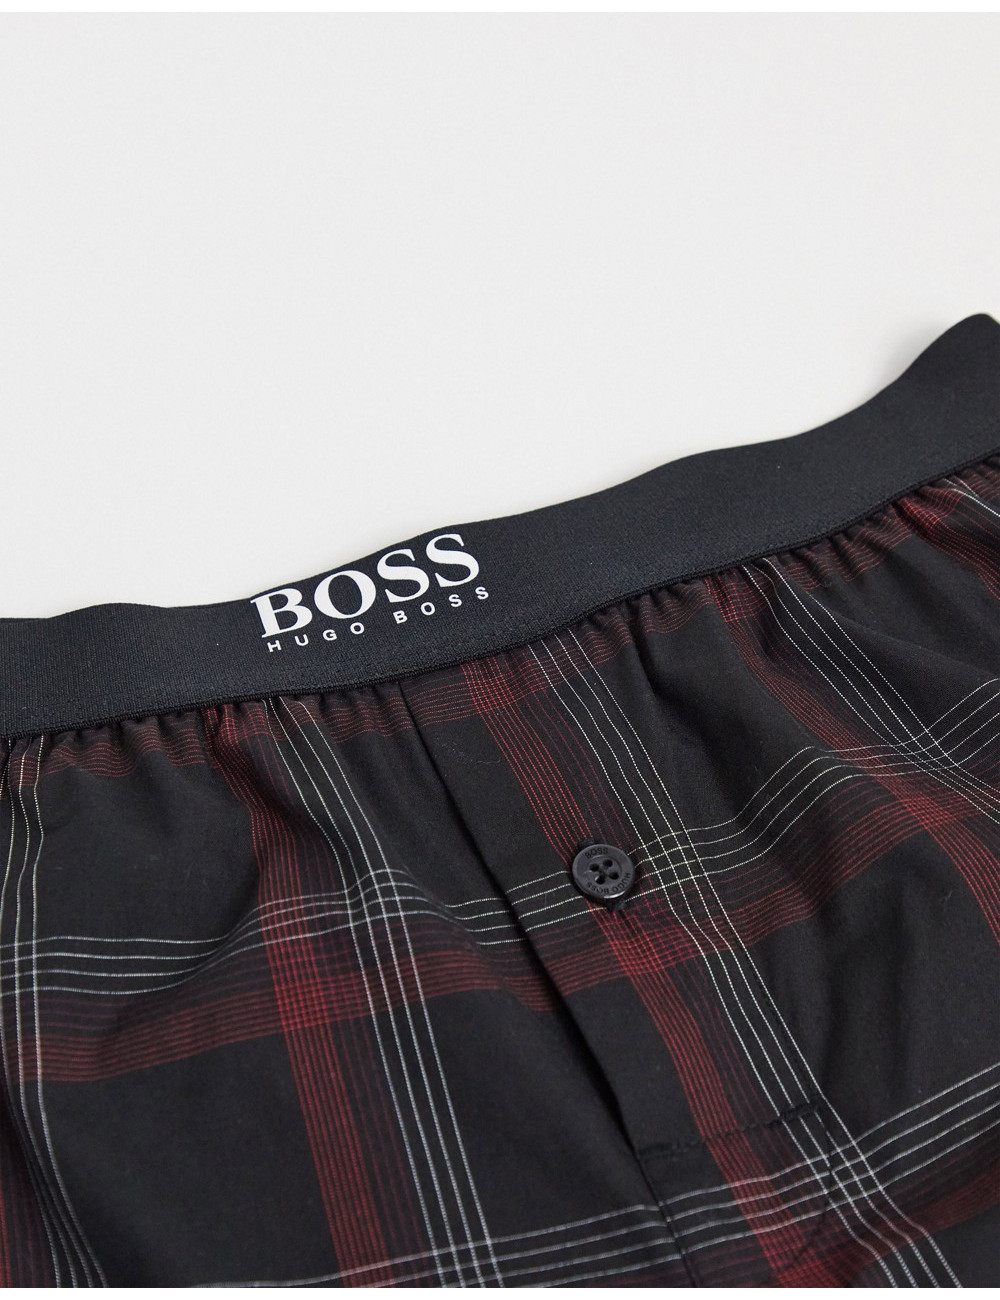 BOSS Bodywear lounge shorts...